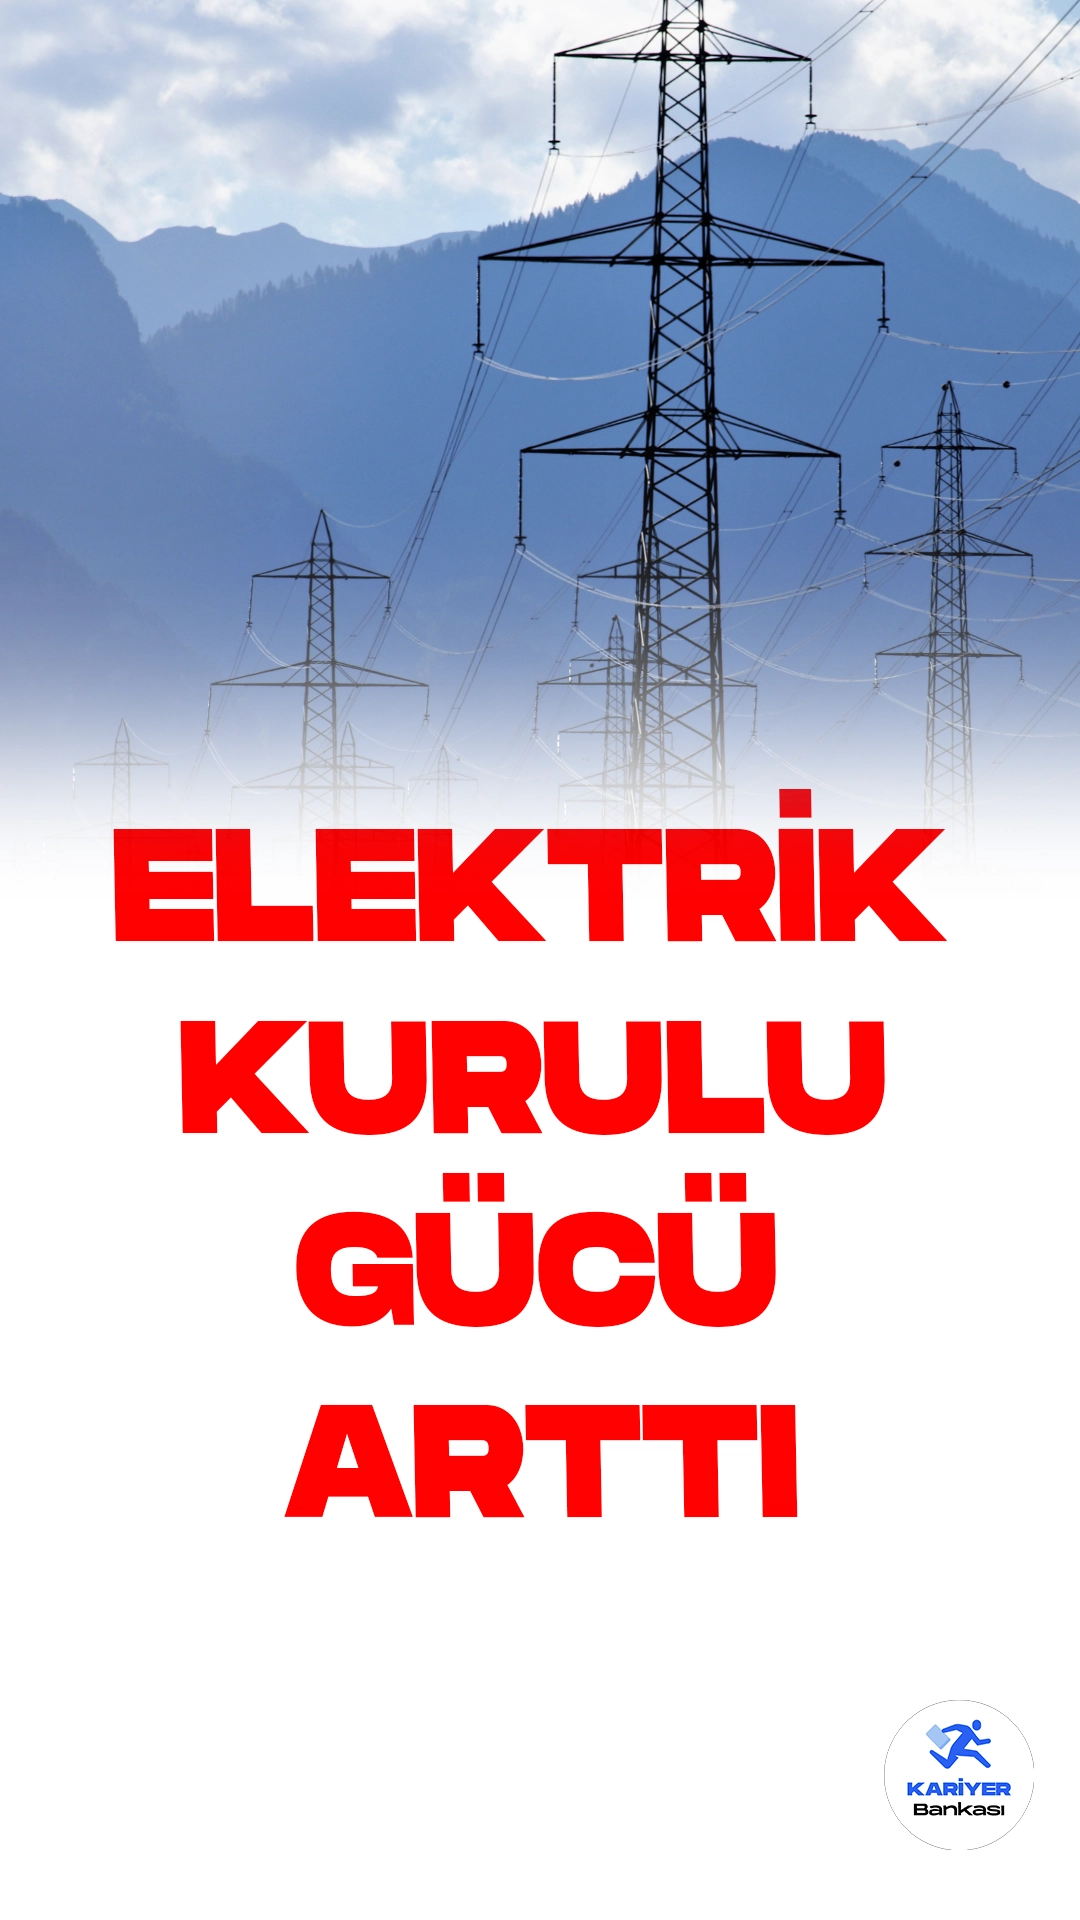 Türkiye Elektrik Üretiminde Büyük Atılım: Kurulu Güç 3.3 Kat Arttı.Türkiye'nin 2002 yılında sadece 31,846 megavat olan elektrik kurulu gücü, sonunda 105,135 megavata ulaşarak tam 3.3 kat arttı. Bu muazzam büyüme, temmuz sonunda gerçekleşti. Ayrıca, elektrik üretimindeki yenilenebilir enerji payı yüzde 42'ye yükseldi.